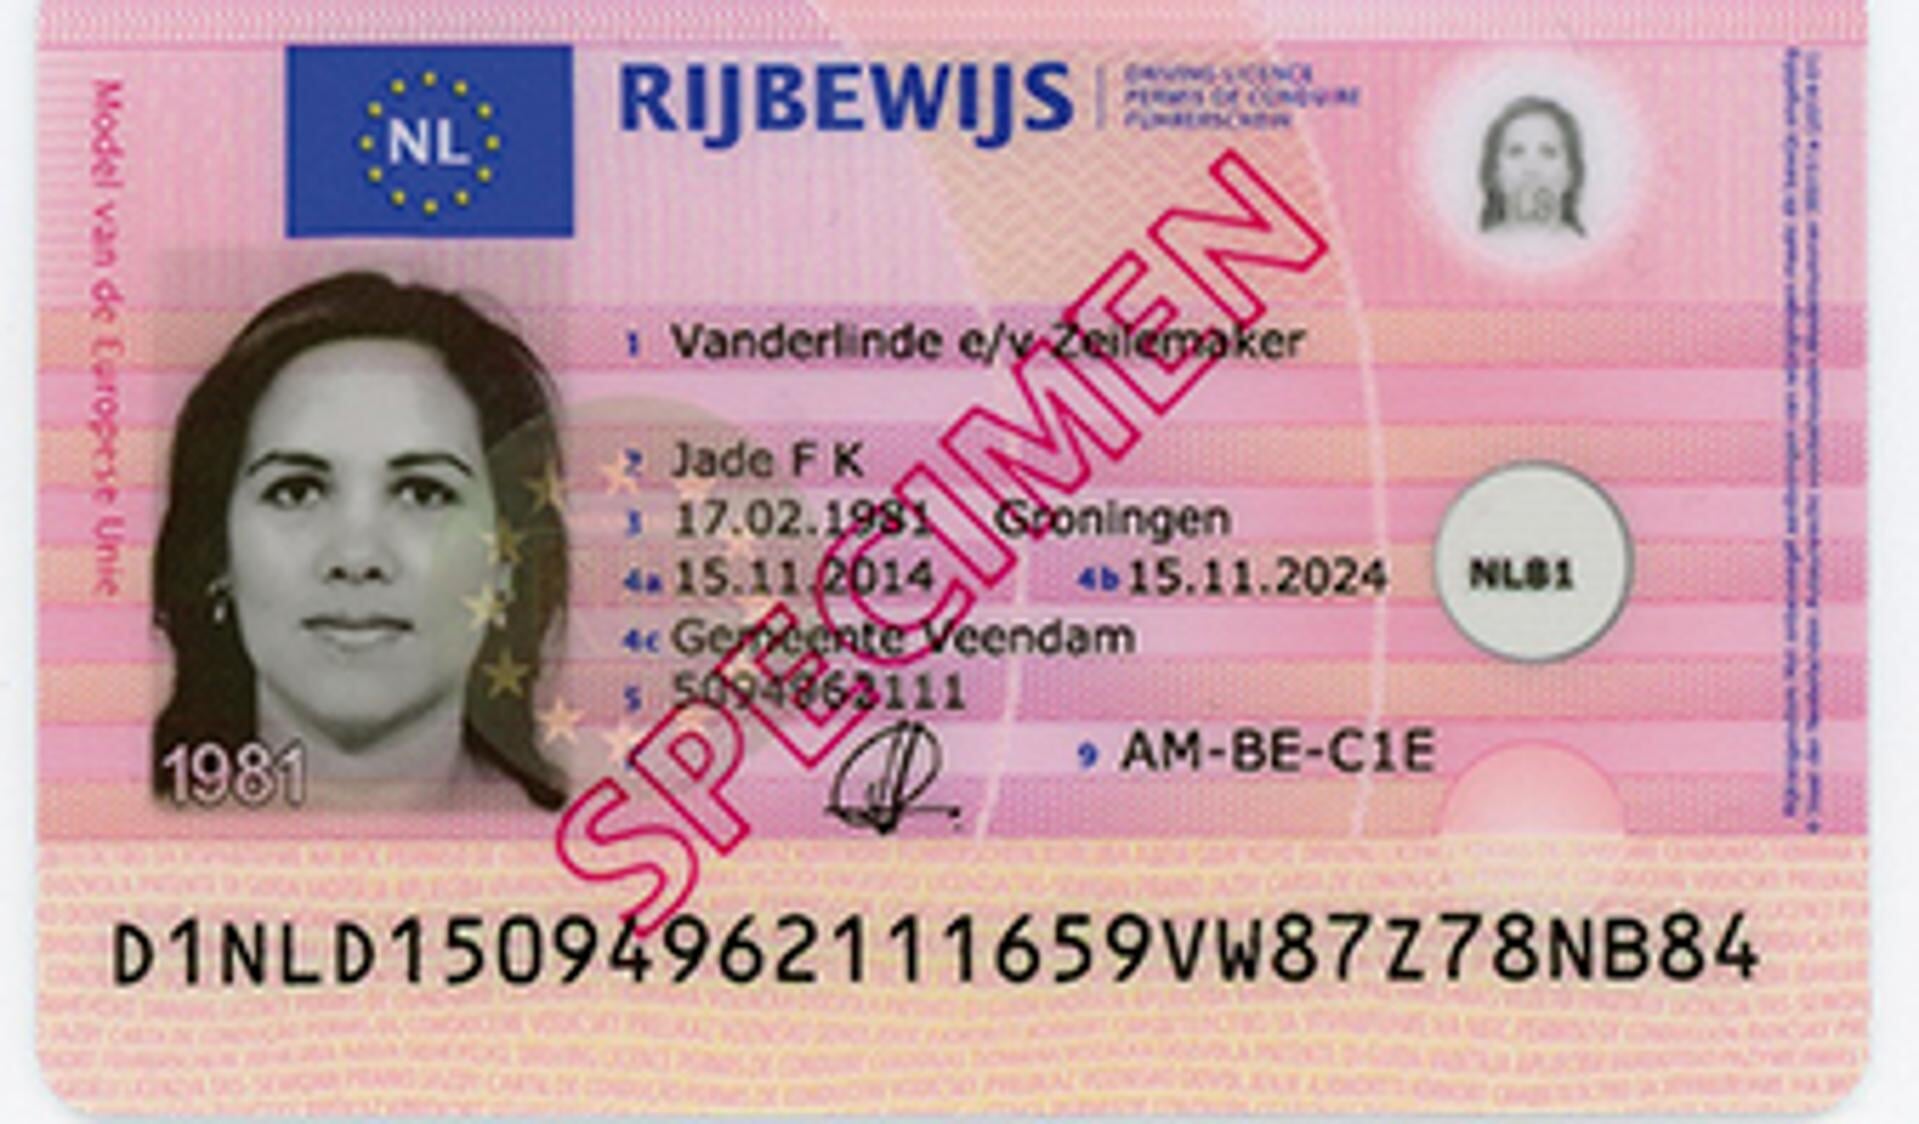 Voorbeeld van een Nederlands rijbewijs, uiteraard niet van de betreffende persoon van dit artikel.